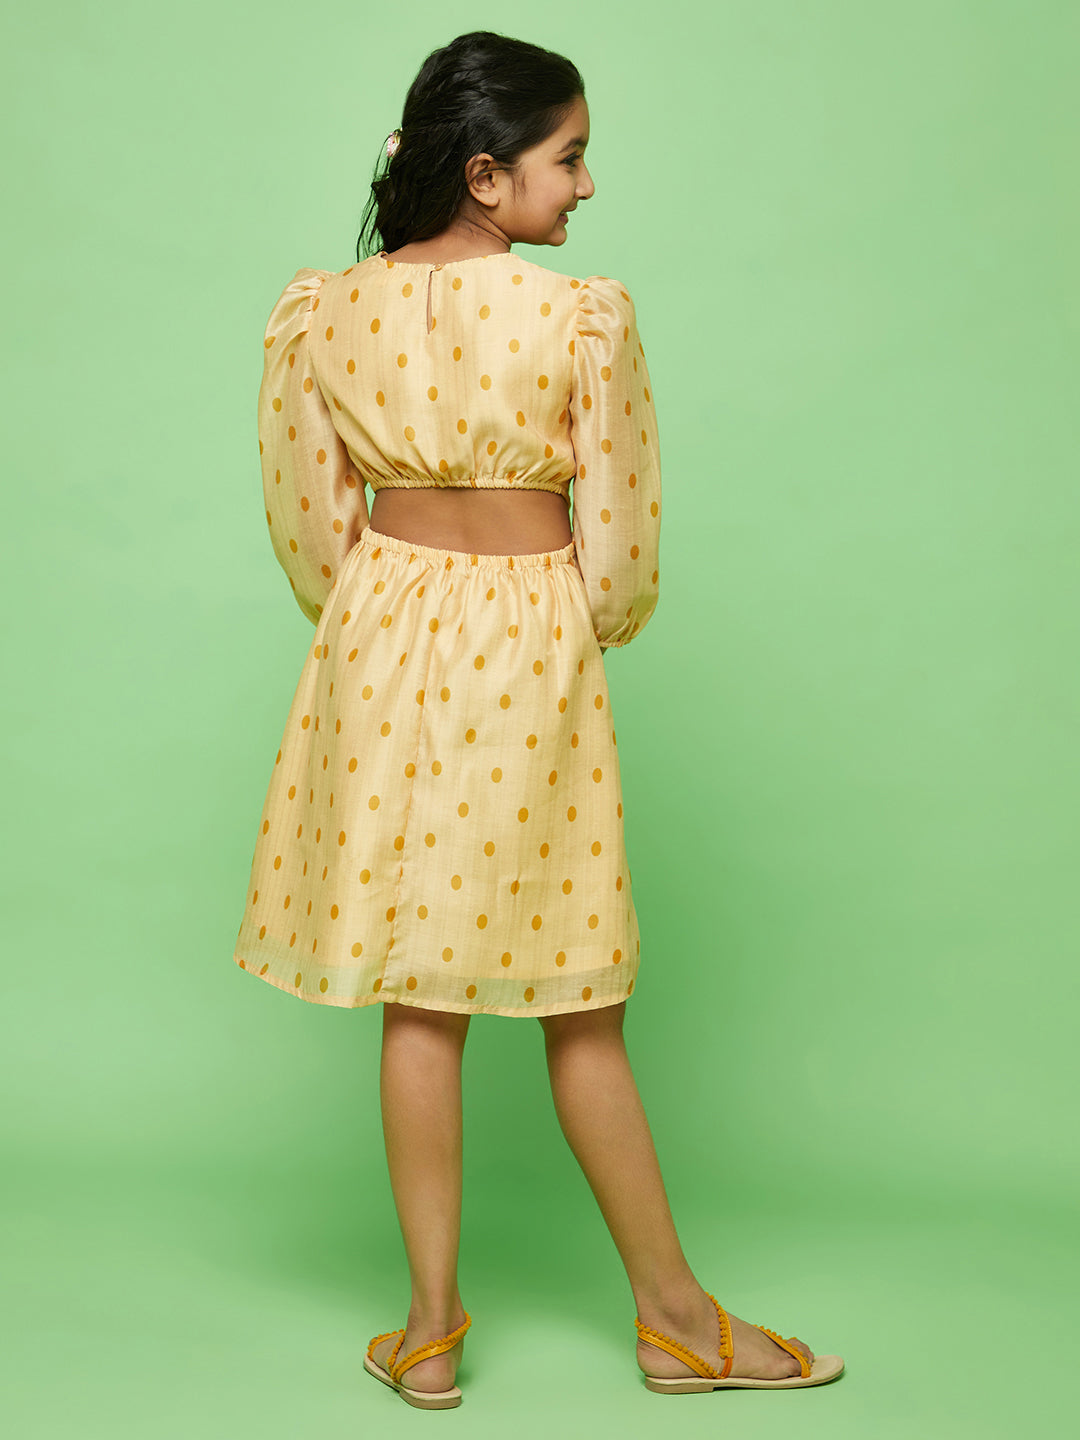 Cream Polka Dot Print Skater Dress